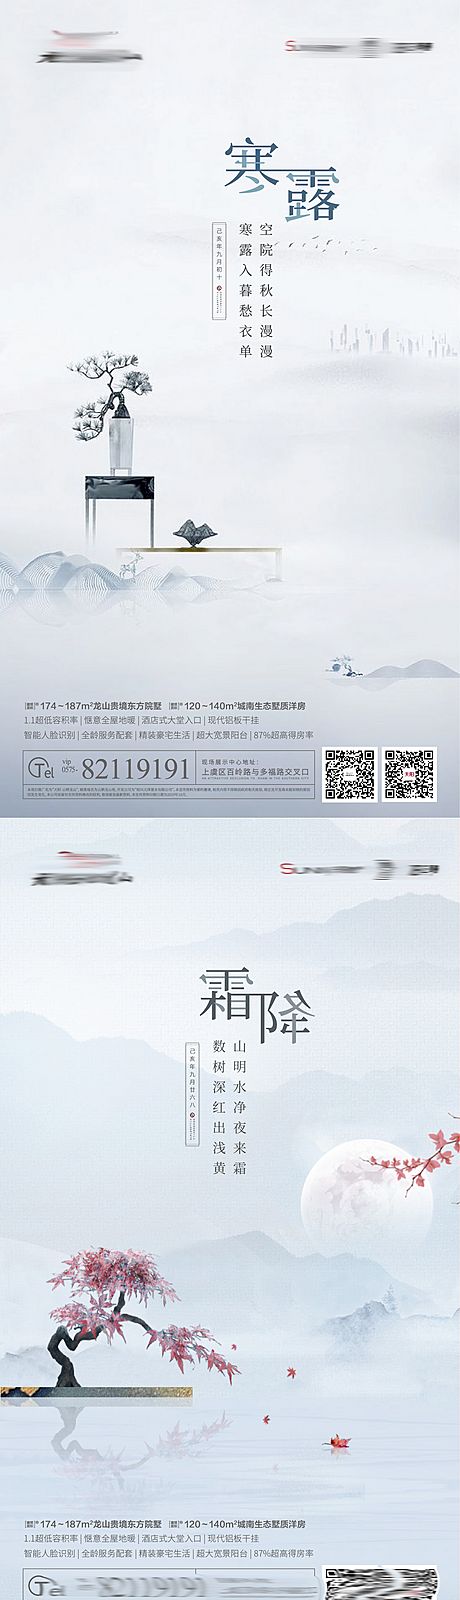 仙图网-地产节霜降寒露立冬气系列海报